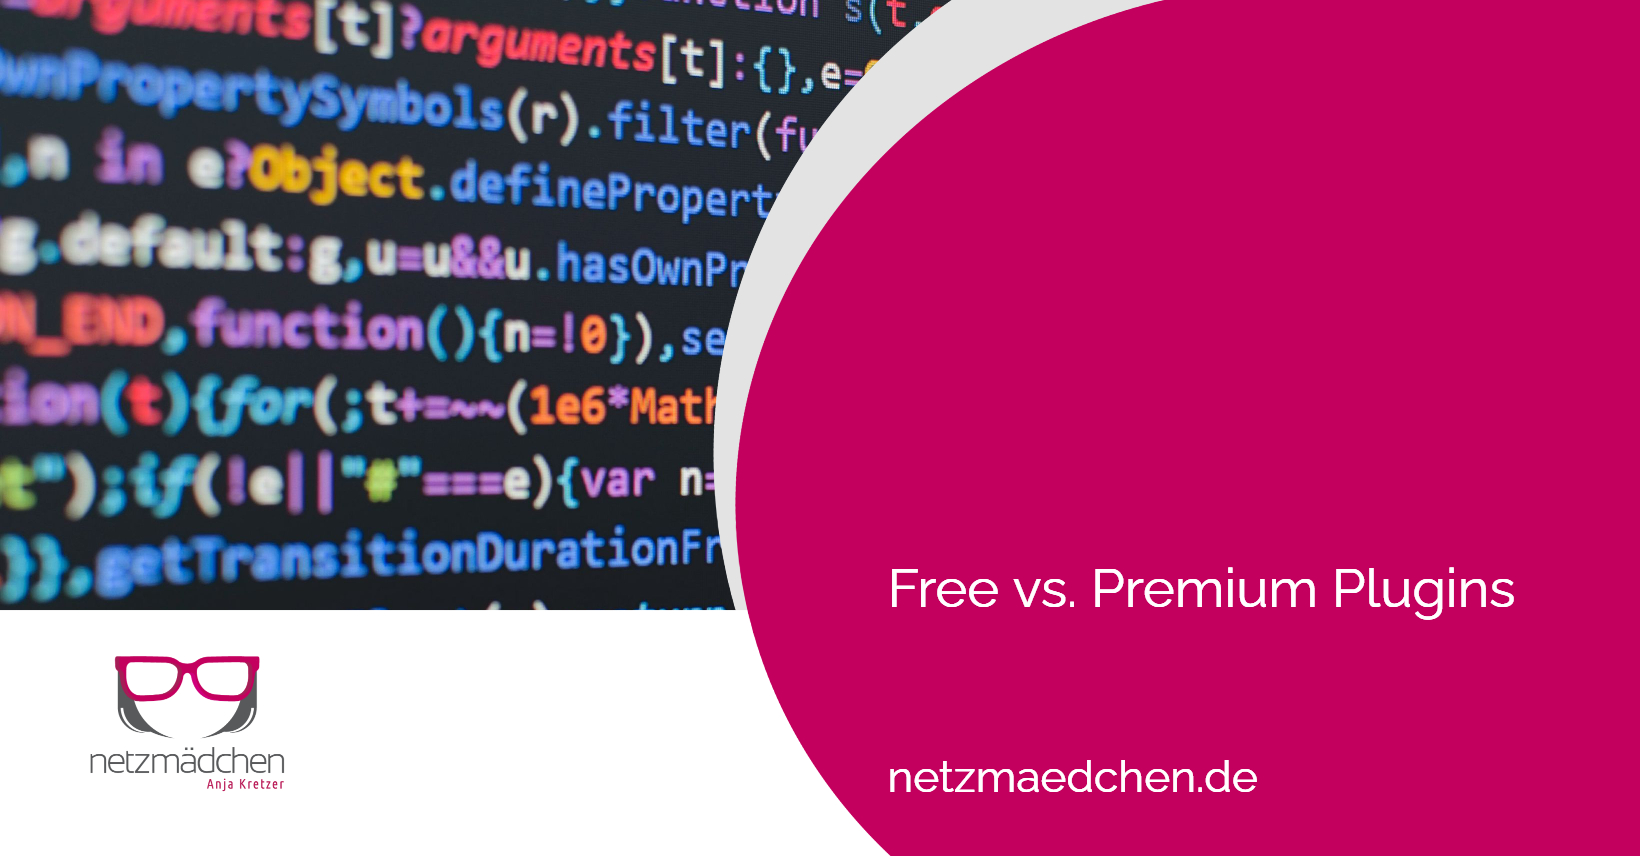 netzmaedchen free vs premium